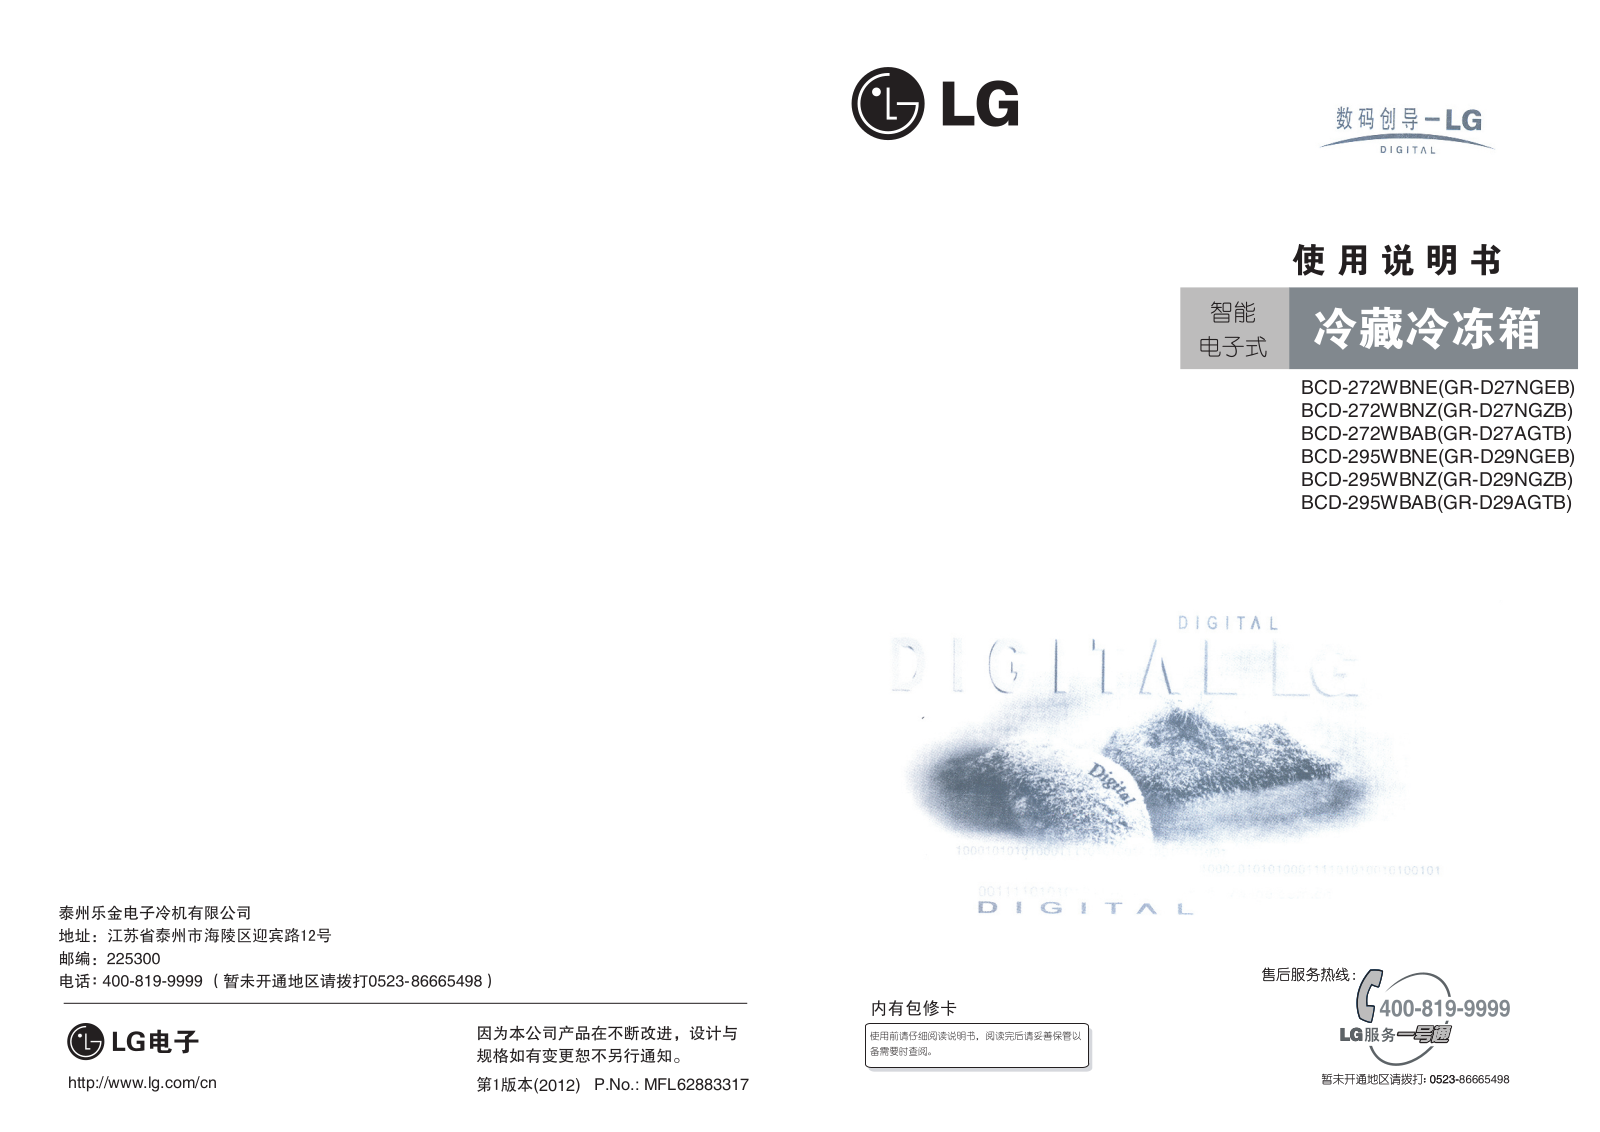 LG GR-D27AGTB, GR-D27NGEB, GR-D27NGZB, GR-D29AGTB, GR-D29NGZB Product Manual